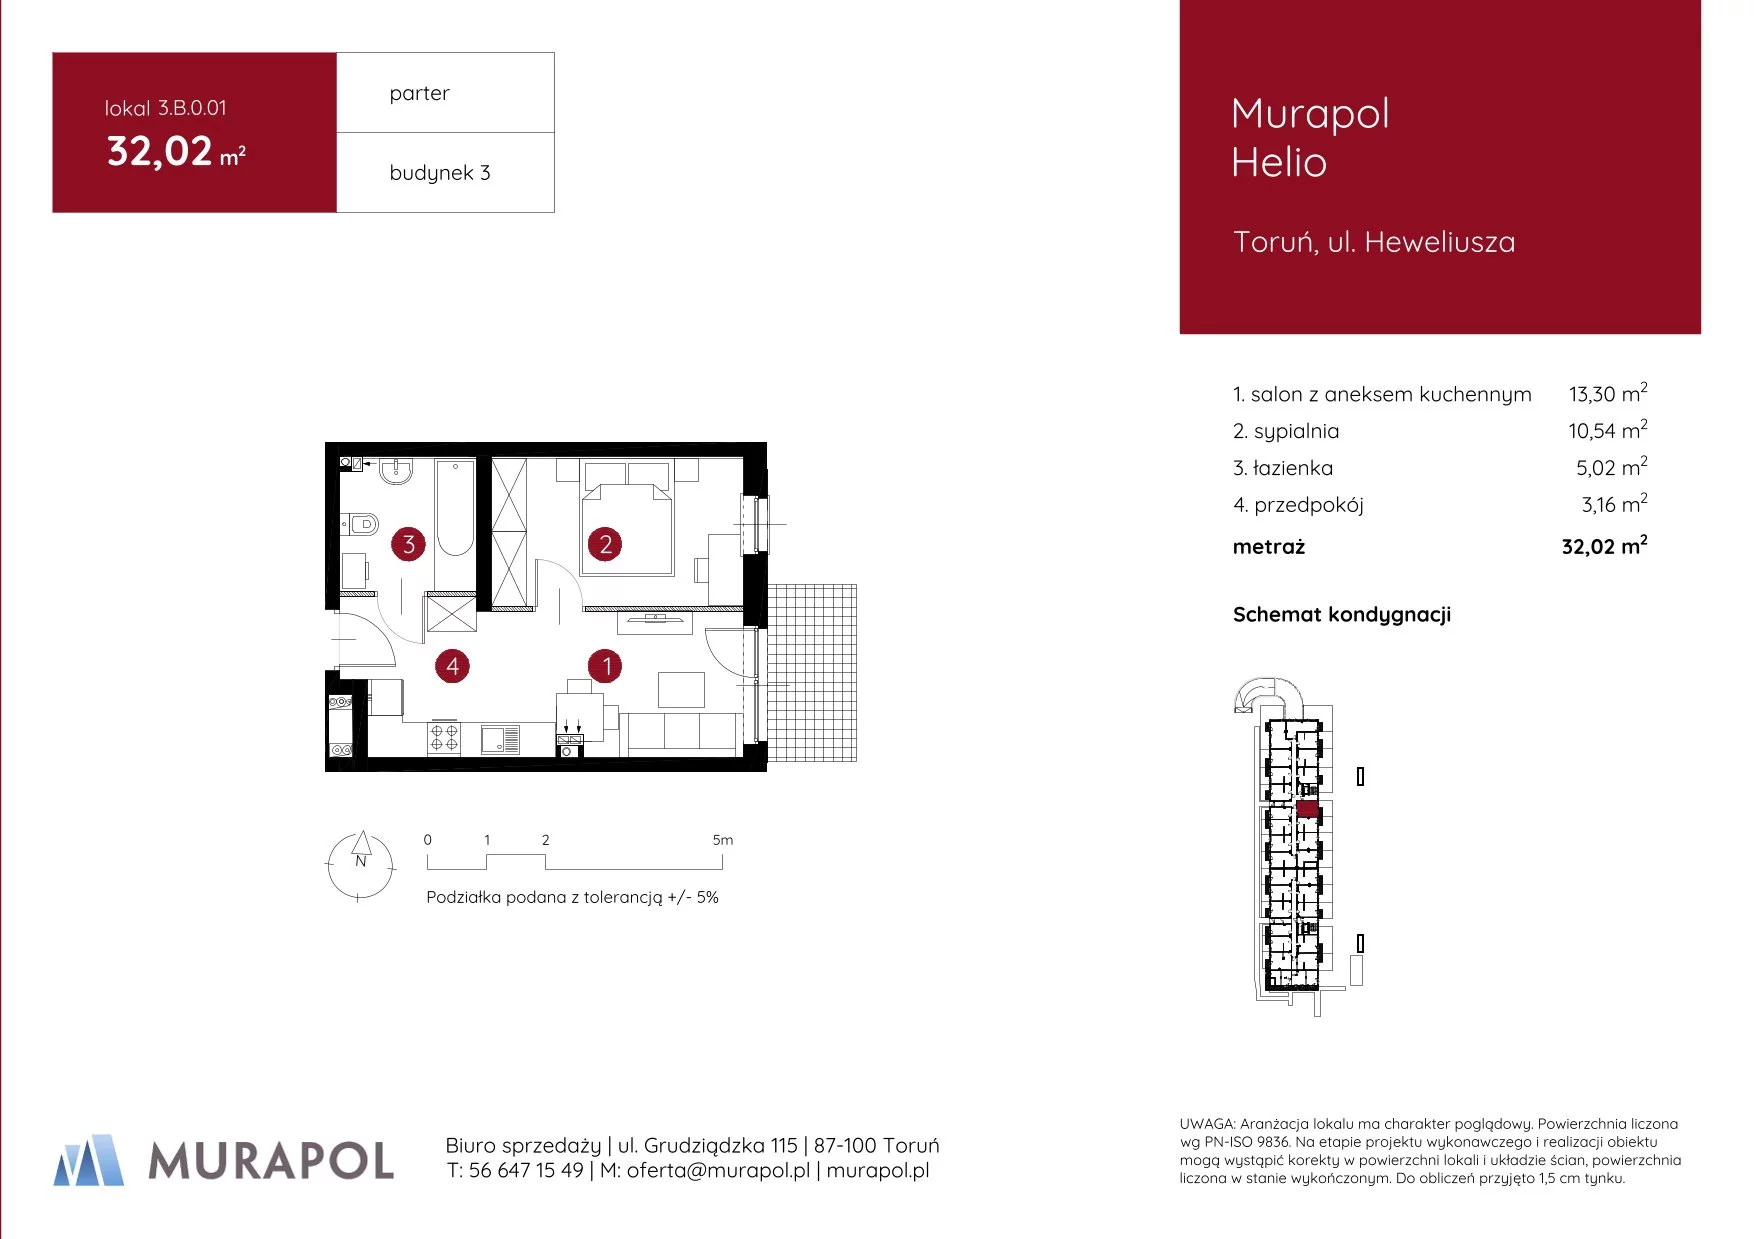 Mieszkanie 32,02 m², parter, oferta nr 3.B.0.01, Murapol Helio, Toruń, Wrzosy, JAR, ul. Heweliusza